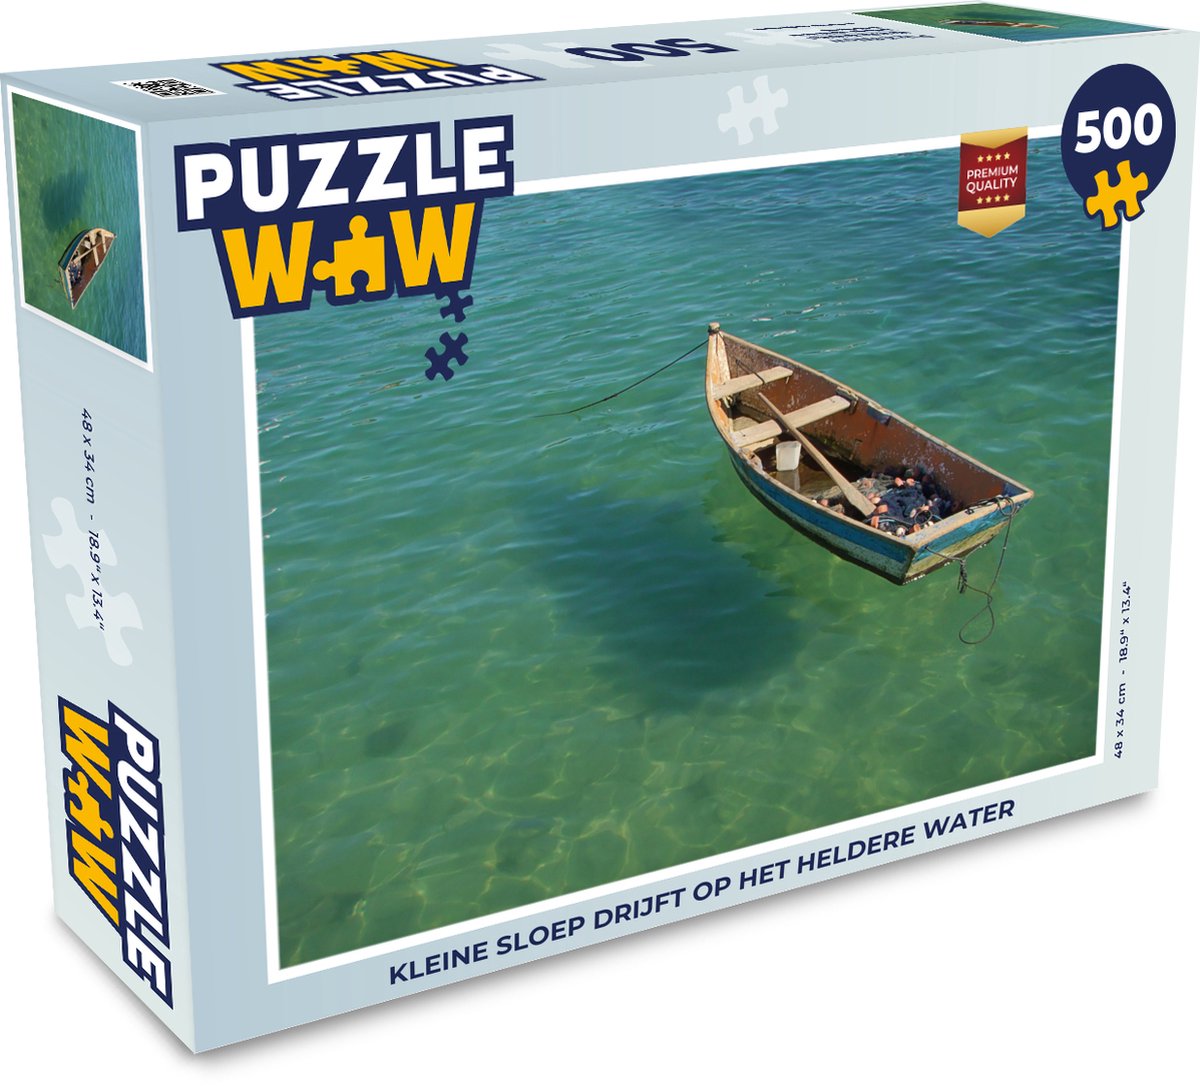 fusie ongezond erven Puzzel 500 stukjes Sloep - Kleine sloep drijft op het heldere water -  PuzzleWow heeft... | bol.com